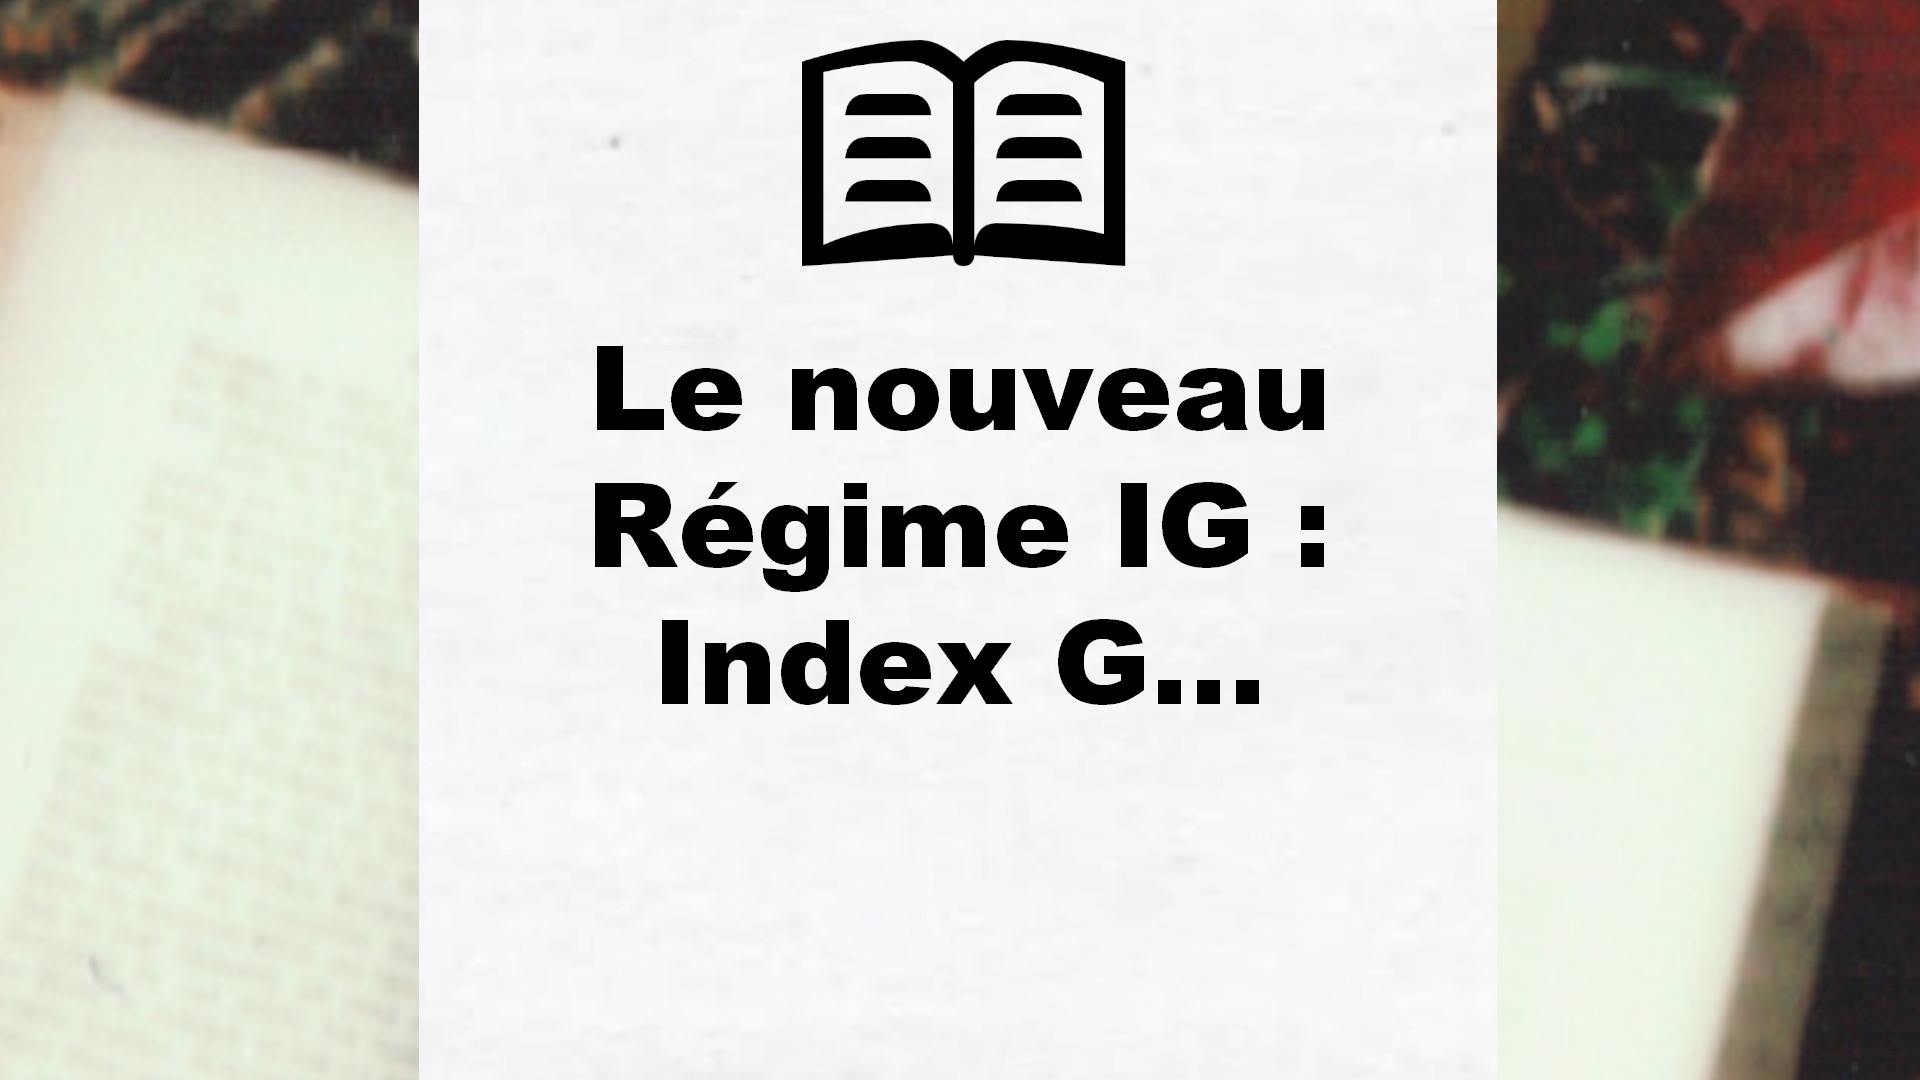 Le nouveau Régime IG : Index G… – Critique